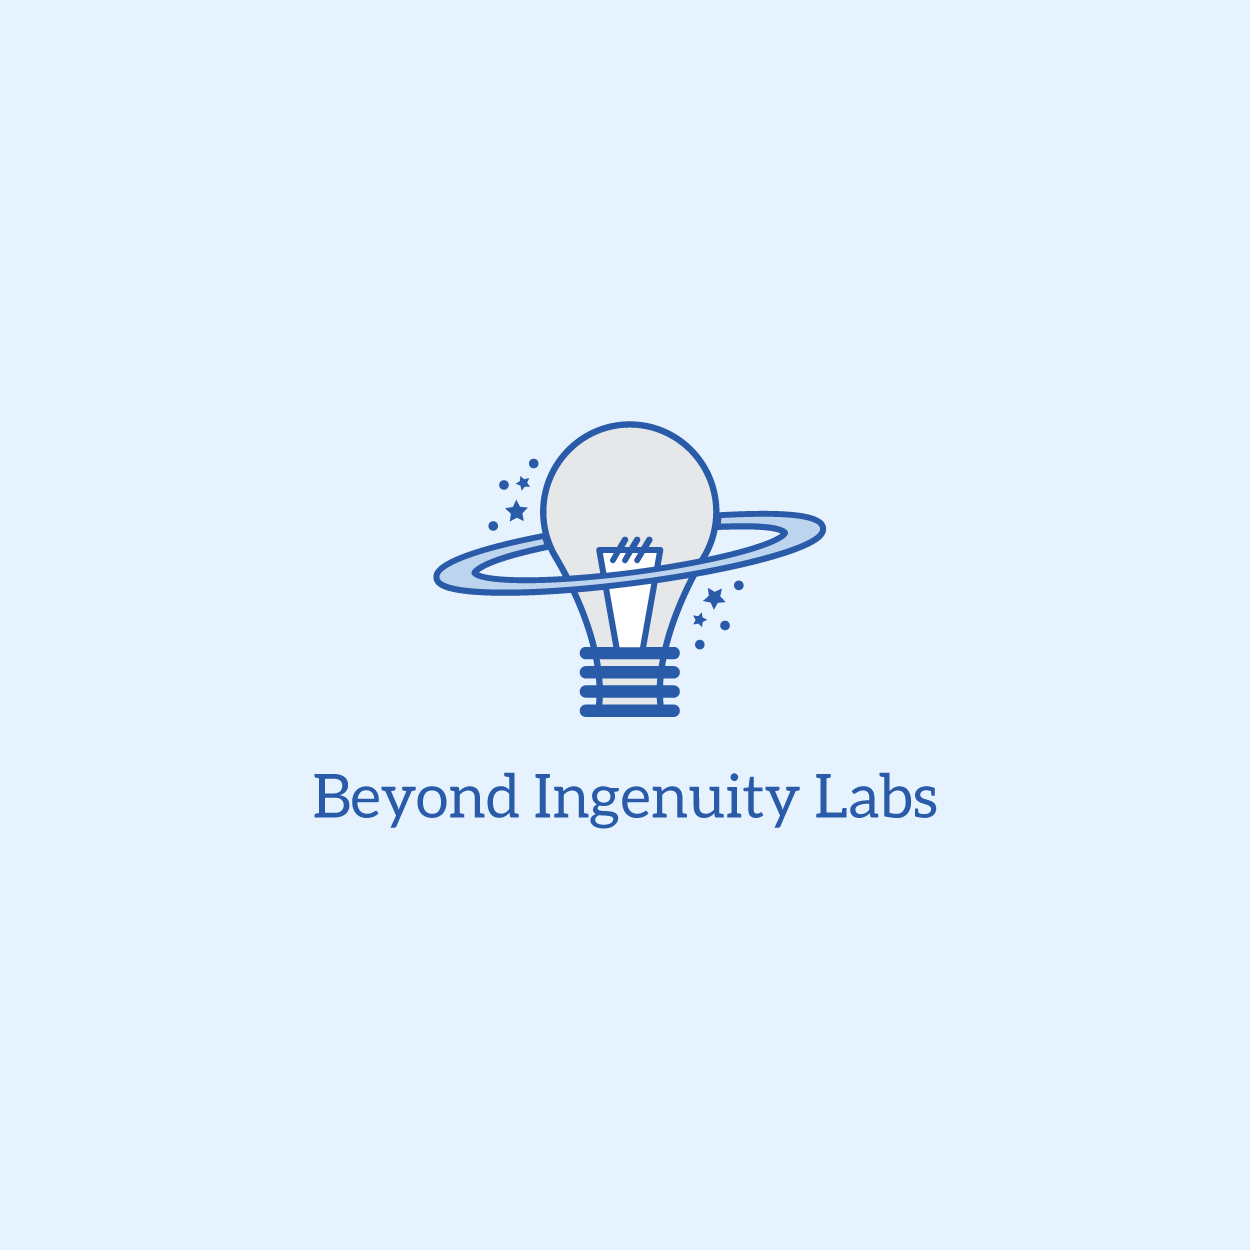 Beyond Ingenuity Labs